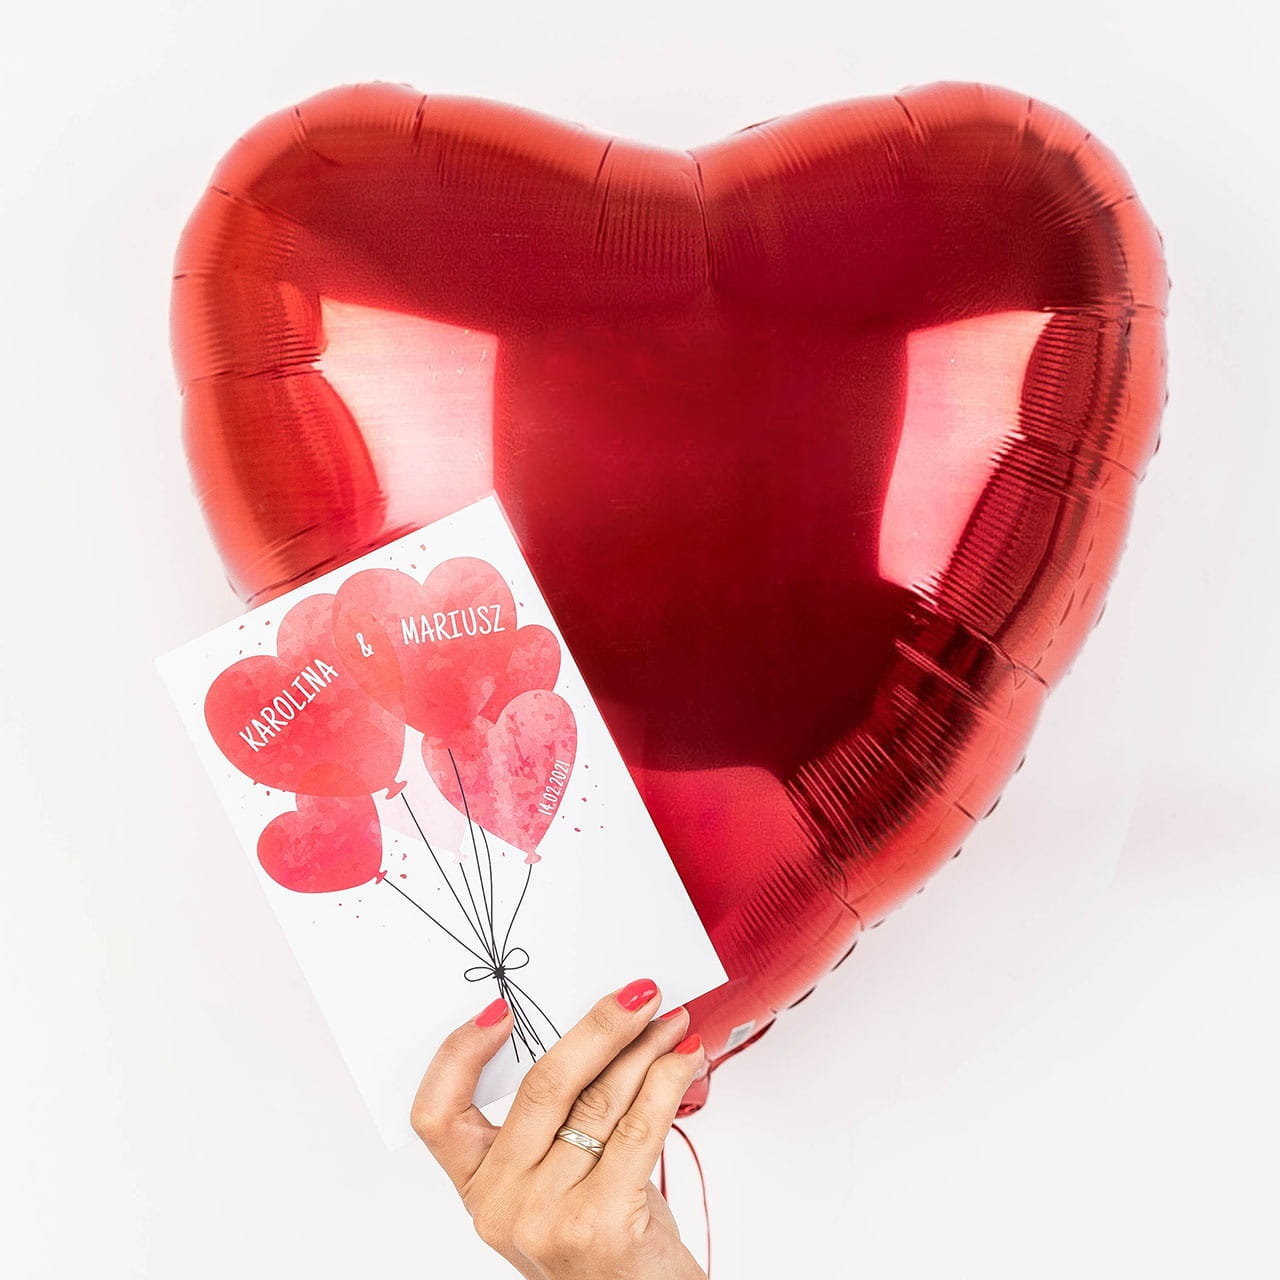 Wielki BALON SERCE + kartka LOVE pomysł na prezent na Walentynki